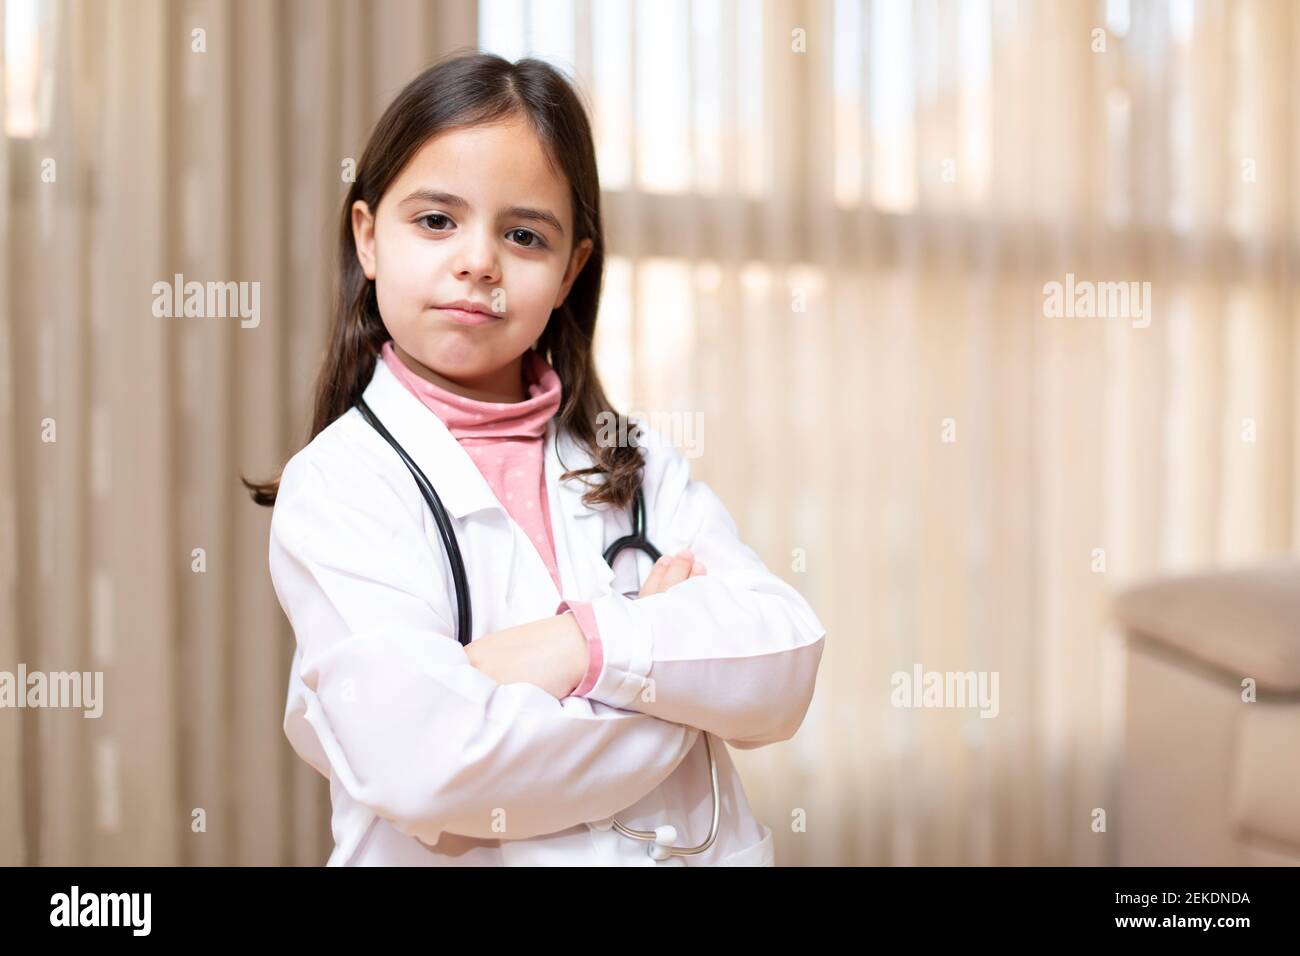 Porträt des kleinen Kindes in Arztuniform posiert mit gekreuzten Armen und verantwortungsvoller Haltung. Konzept von Medizin und Gesundheit. Leerzeichen für Text. Stockfoto